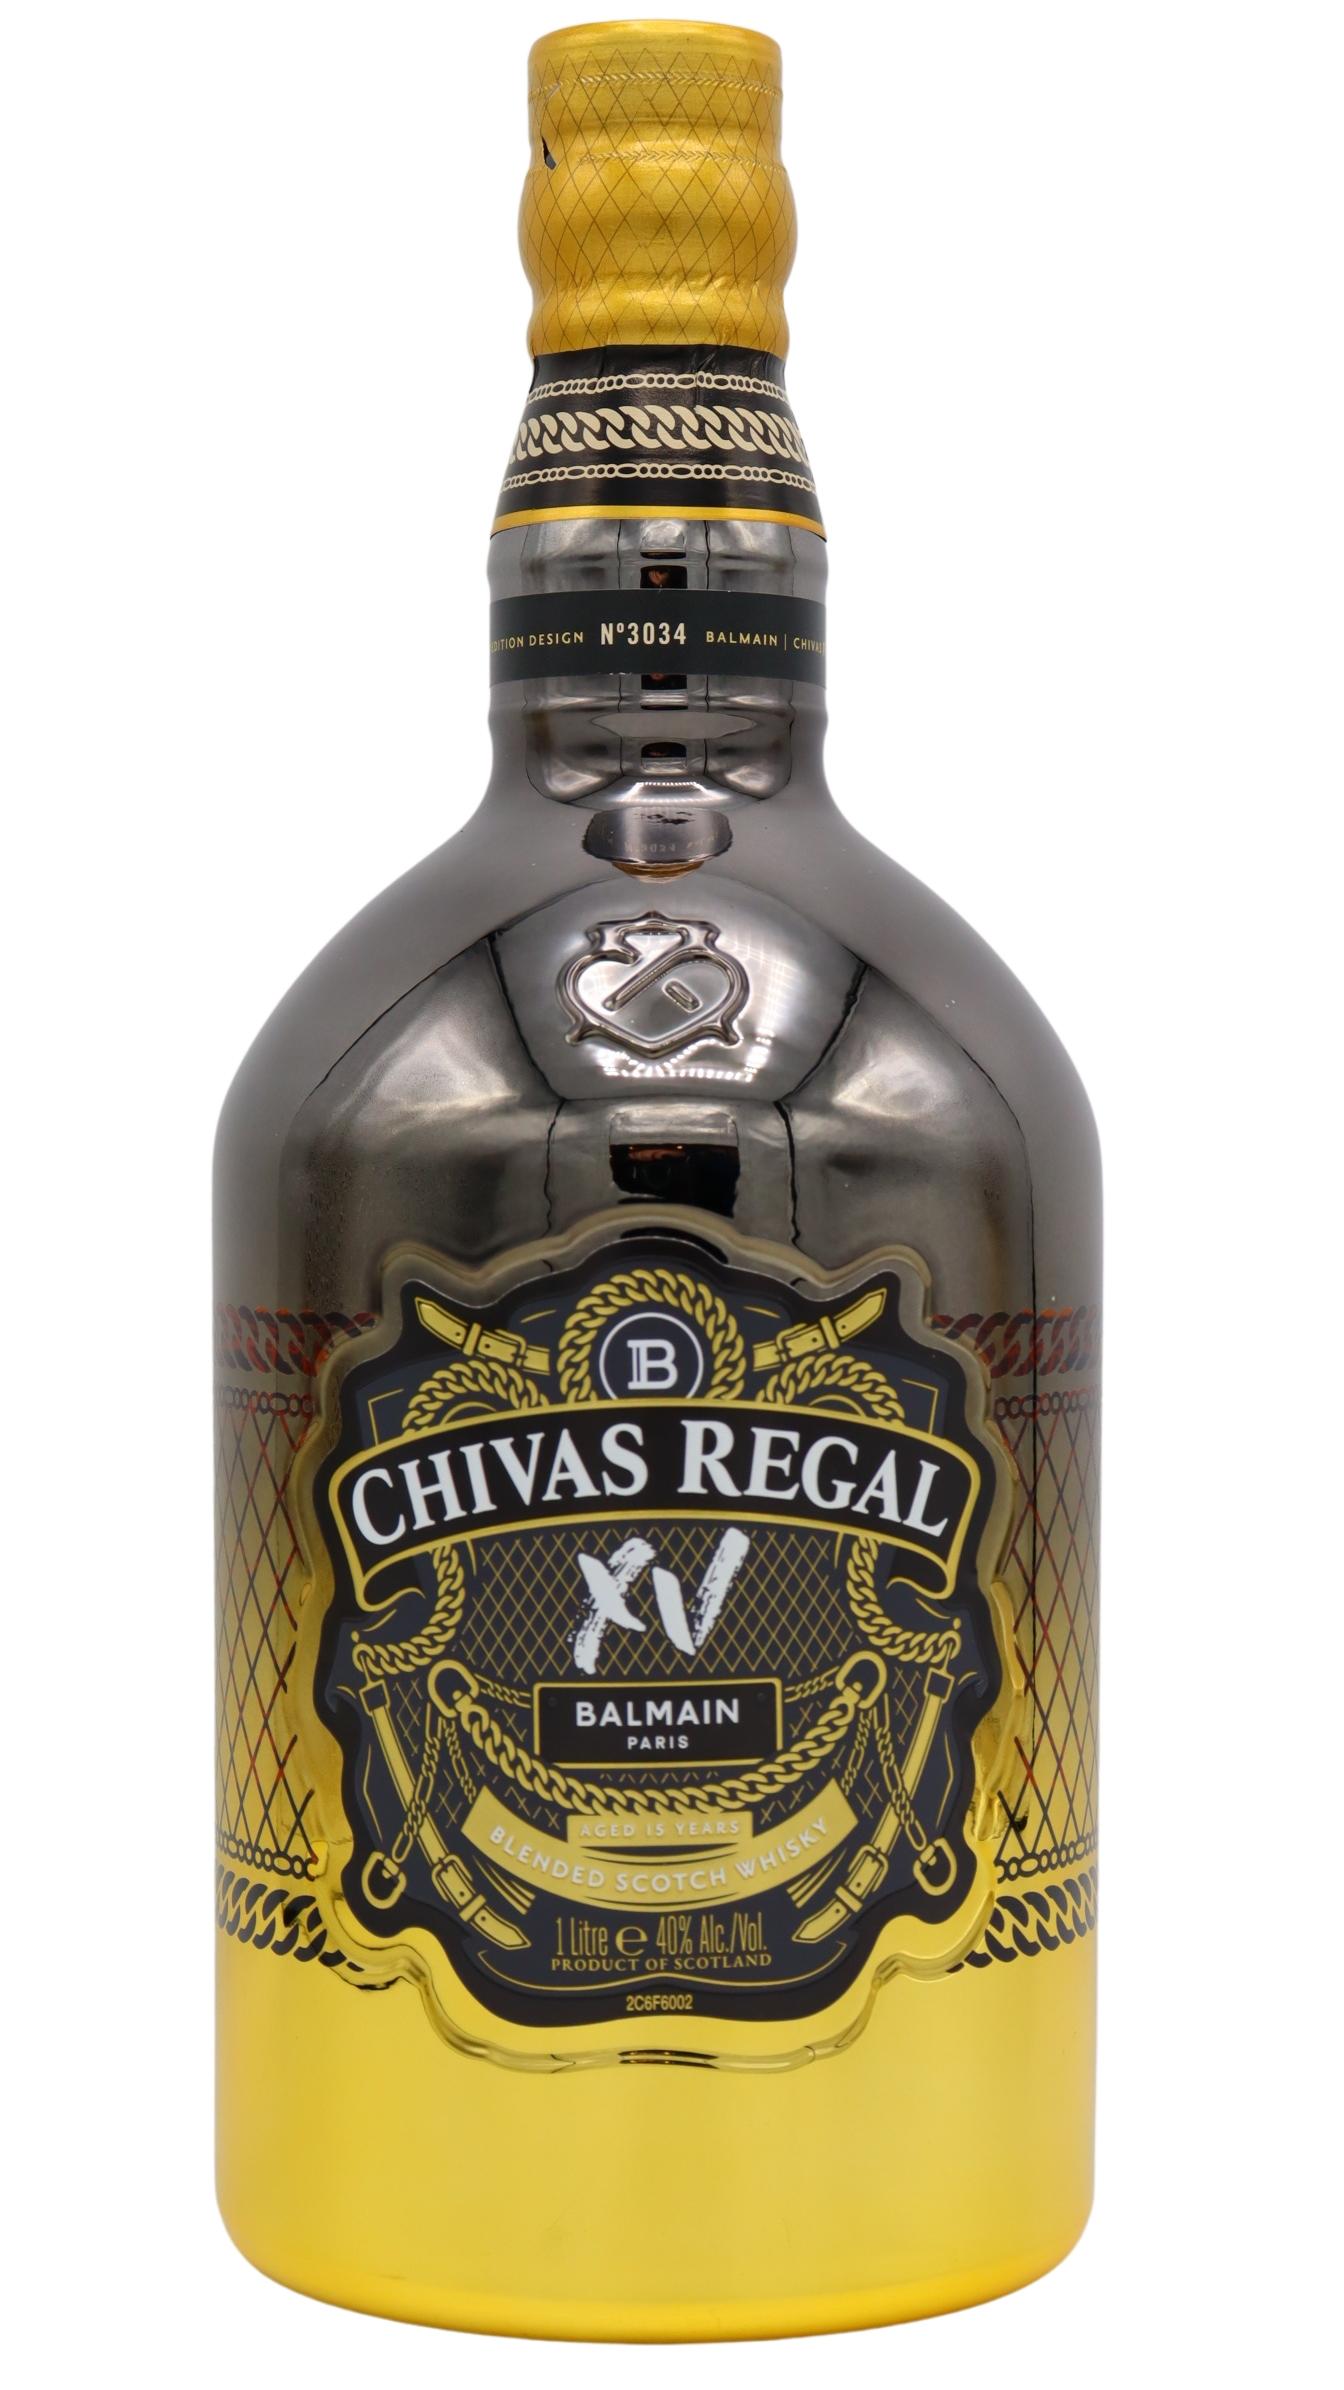 Chivas Regal 15 Year Old